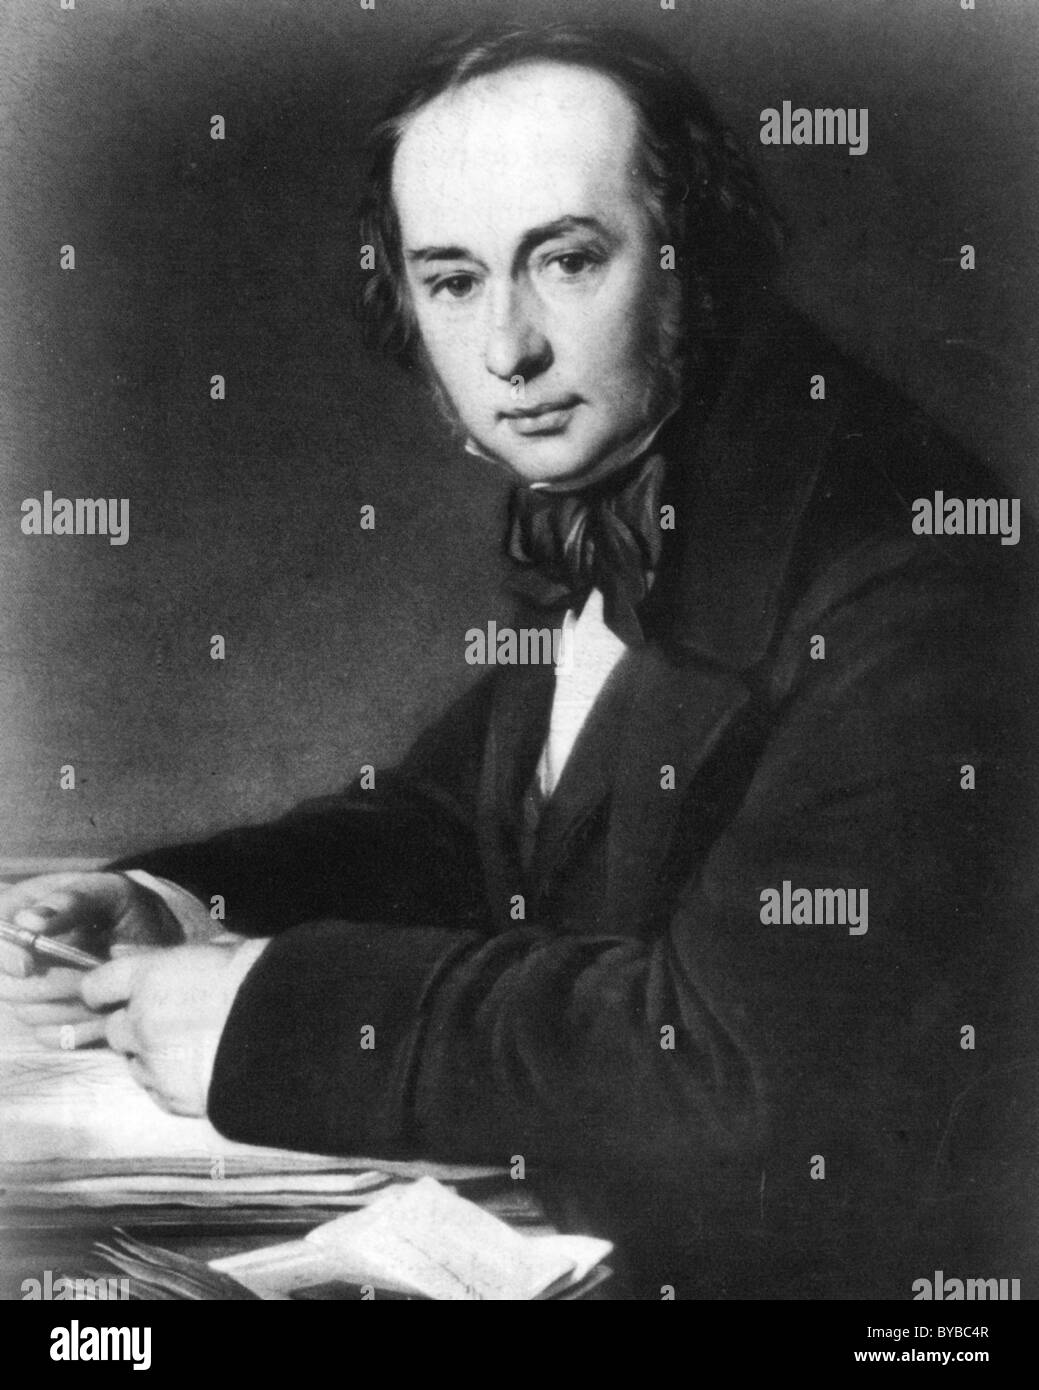 ISAMBARD KINGDOM BRUNEL (1806-1859) ingénieur civil anglais qui a conçu les chemins de fer, les navires et les chantiers navals Banque D'Images